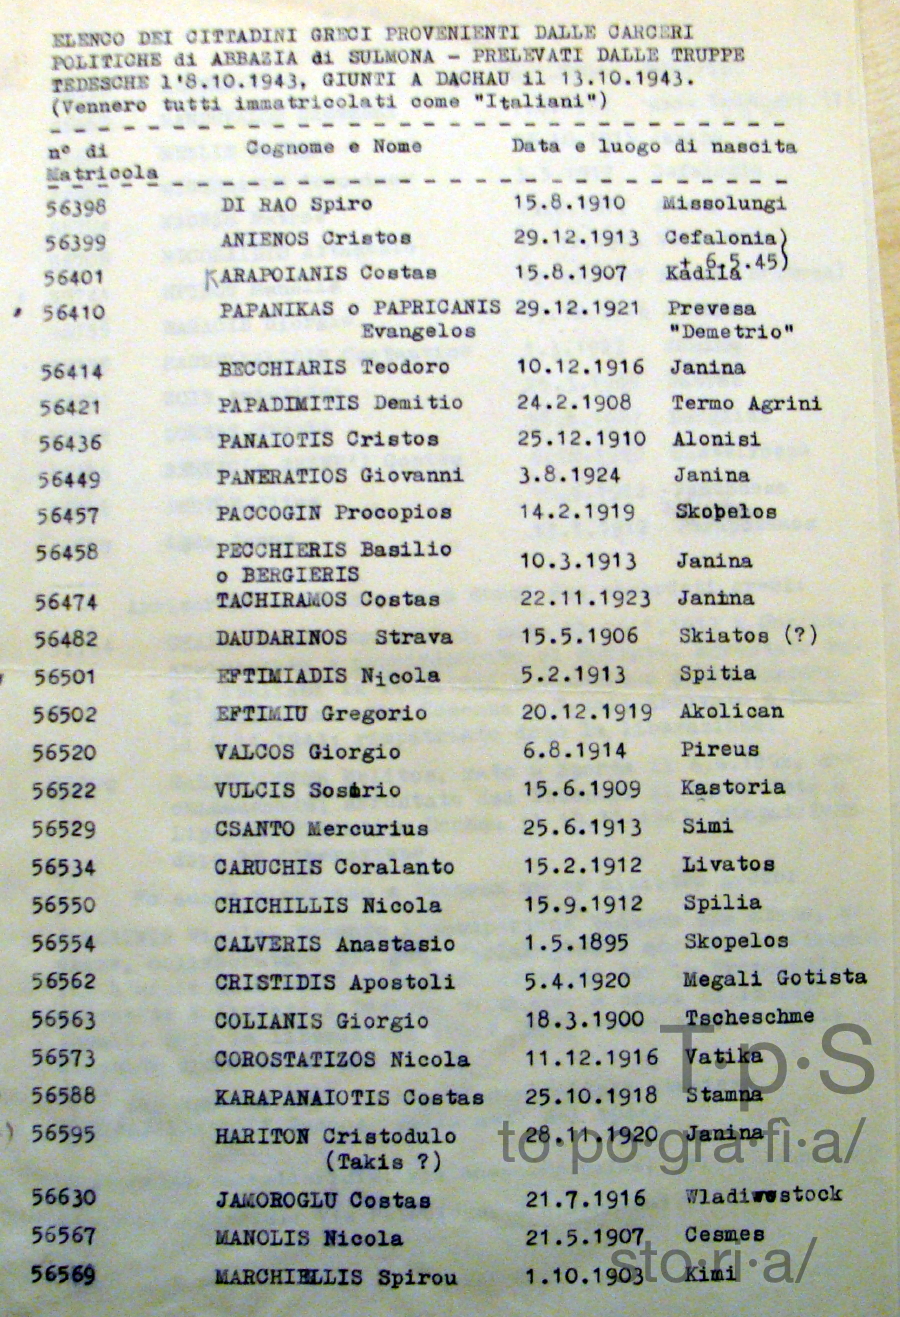 Elenco dei cittadini greci prelevati dalla carceri di Sulmona e deportati a Dachau_1